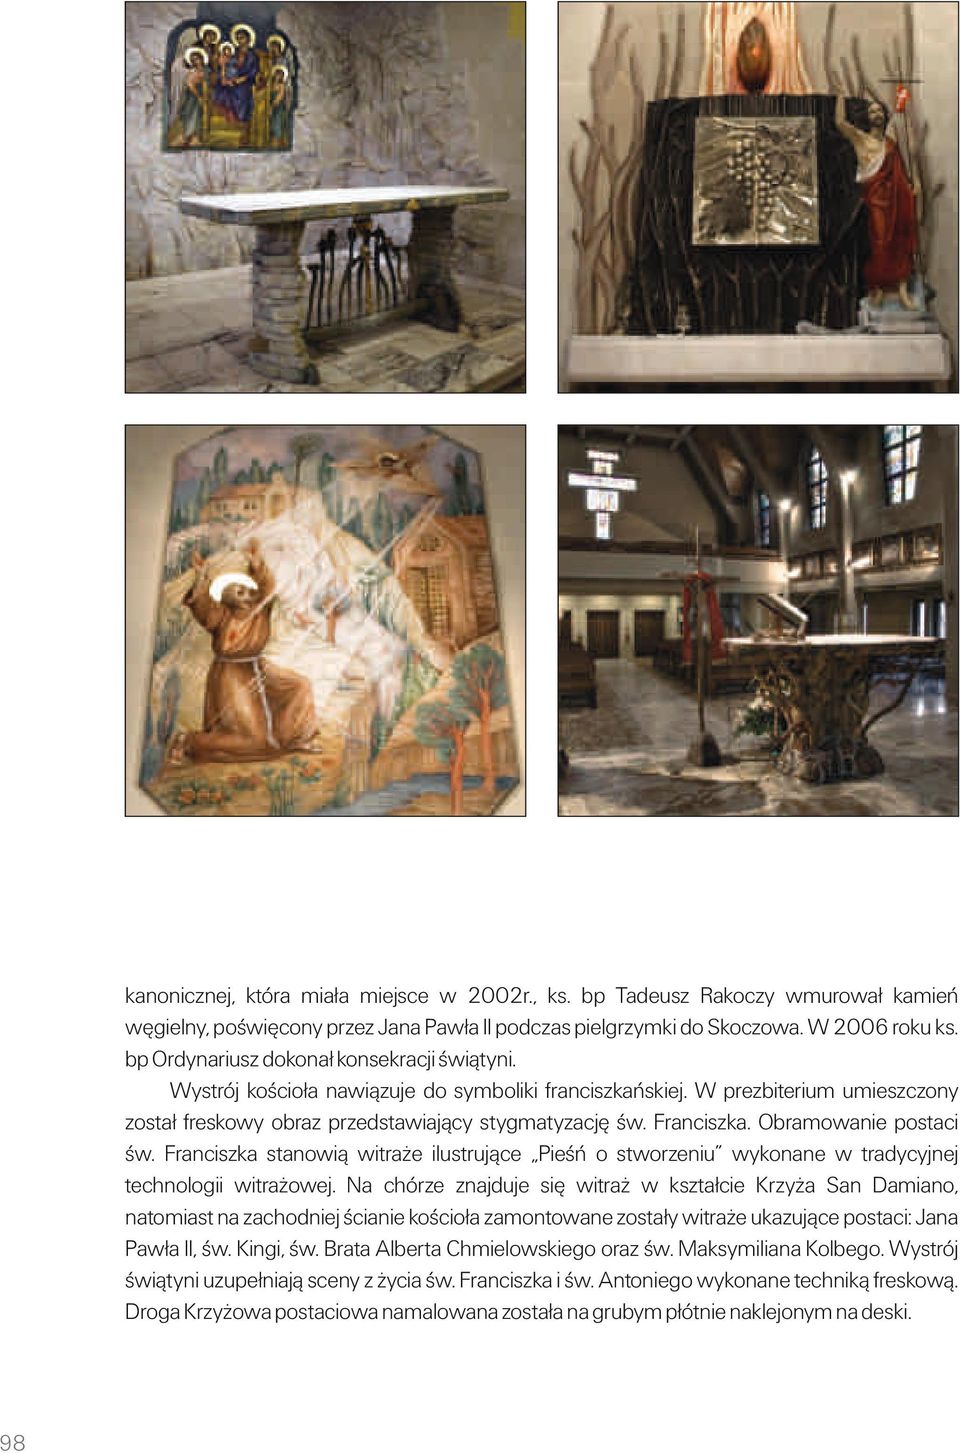 Obramowanie postaci św. Franciszka stanowią witraże ilustrujące Pieśń o stworzeniu wykonane w tradycyjnej technologii witrażowej.